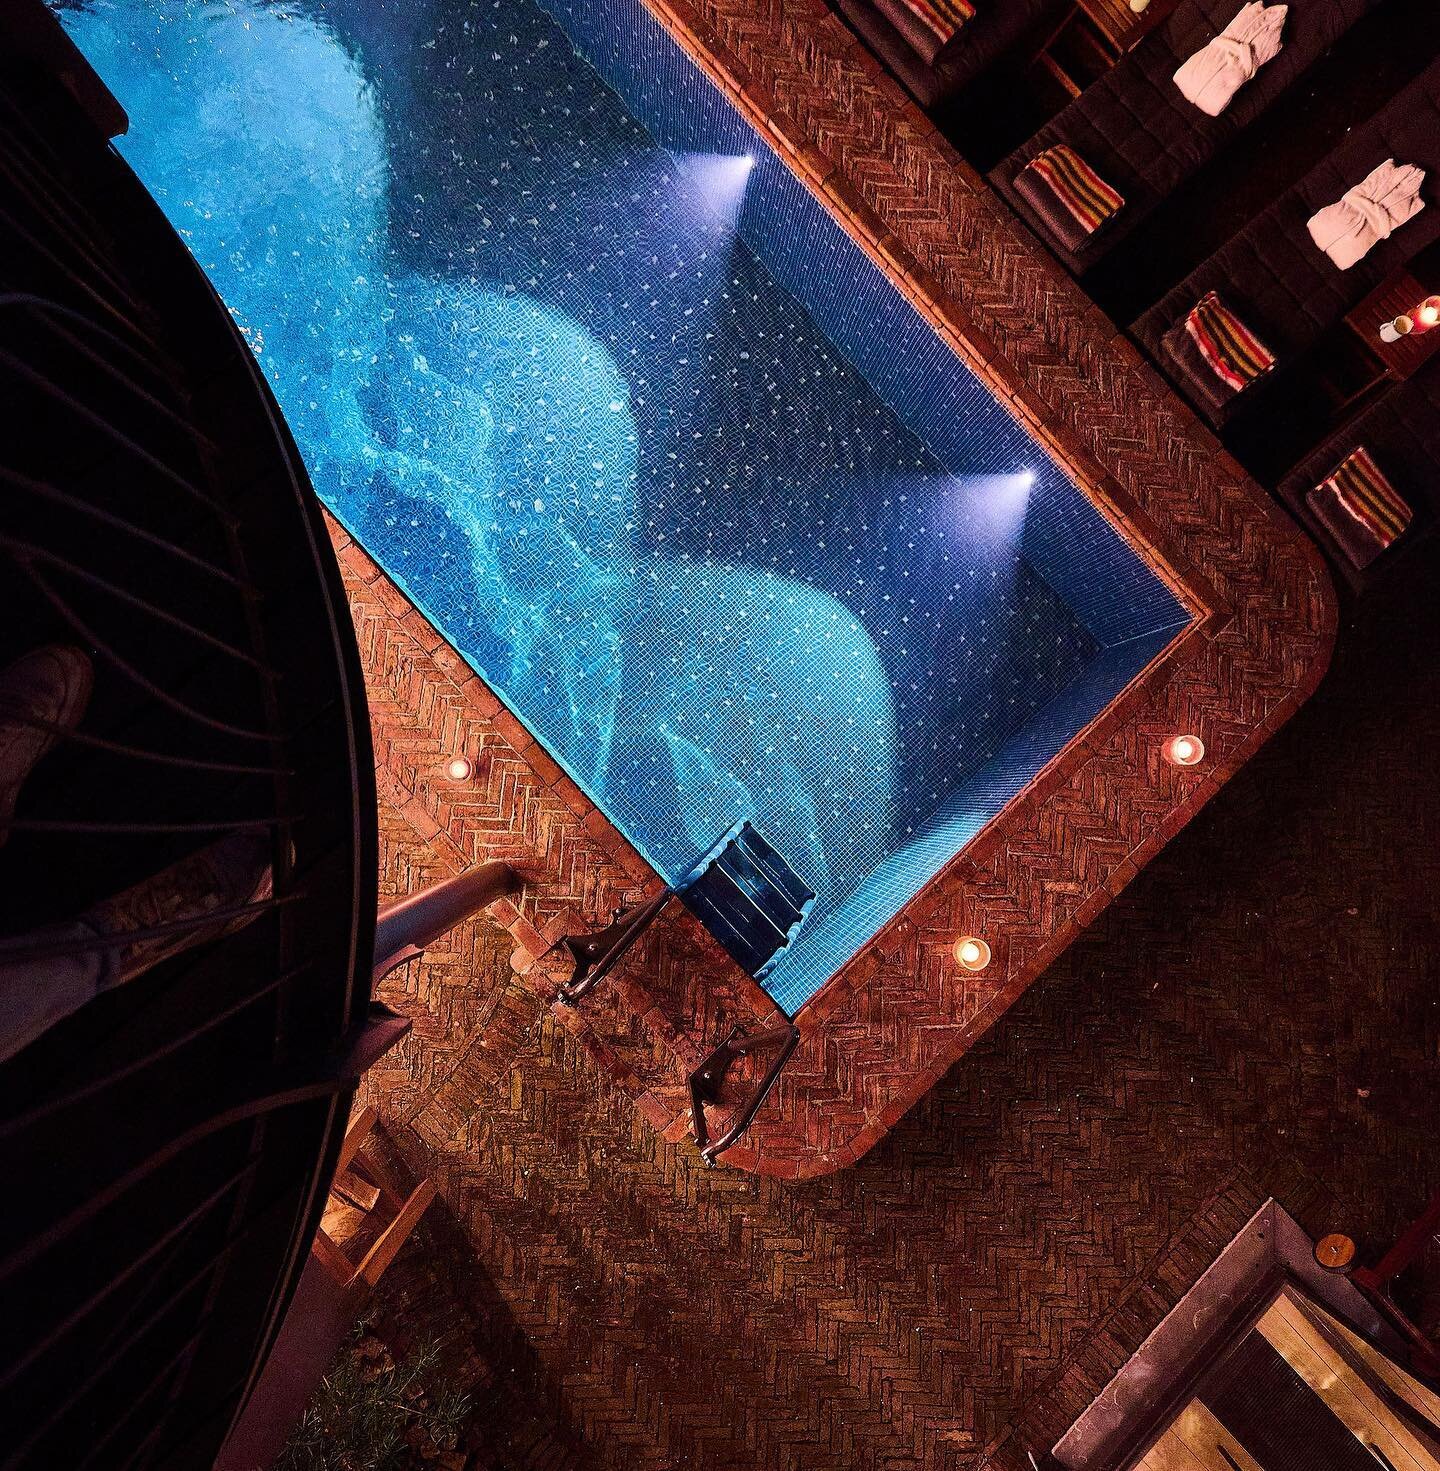 À la tombée de la nuit, osez plonger dans notre piscine extérieure chauffée (28 degrés). 

Et restez ensuite au chaud autour du brasero. 

#wellness #visiterbruxelles #hôtel #piscine chauffée #jardin #brazier